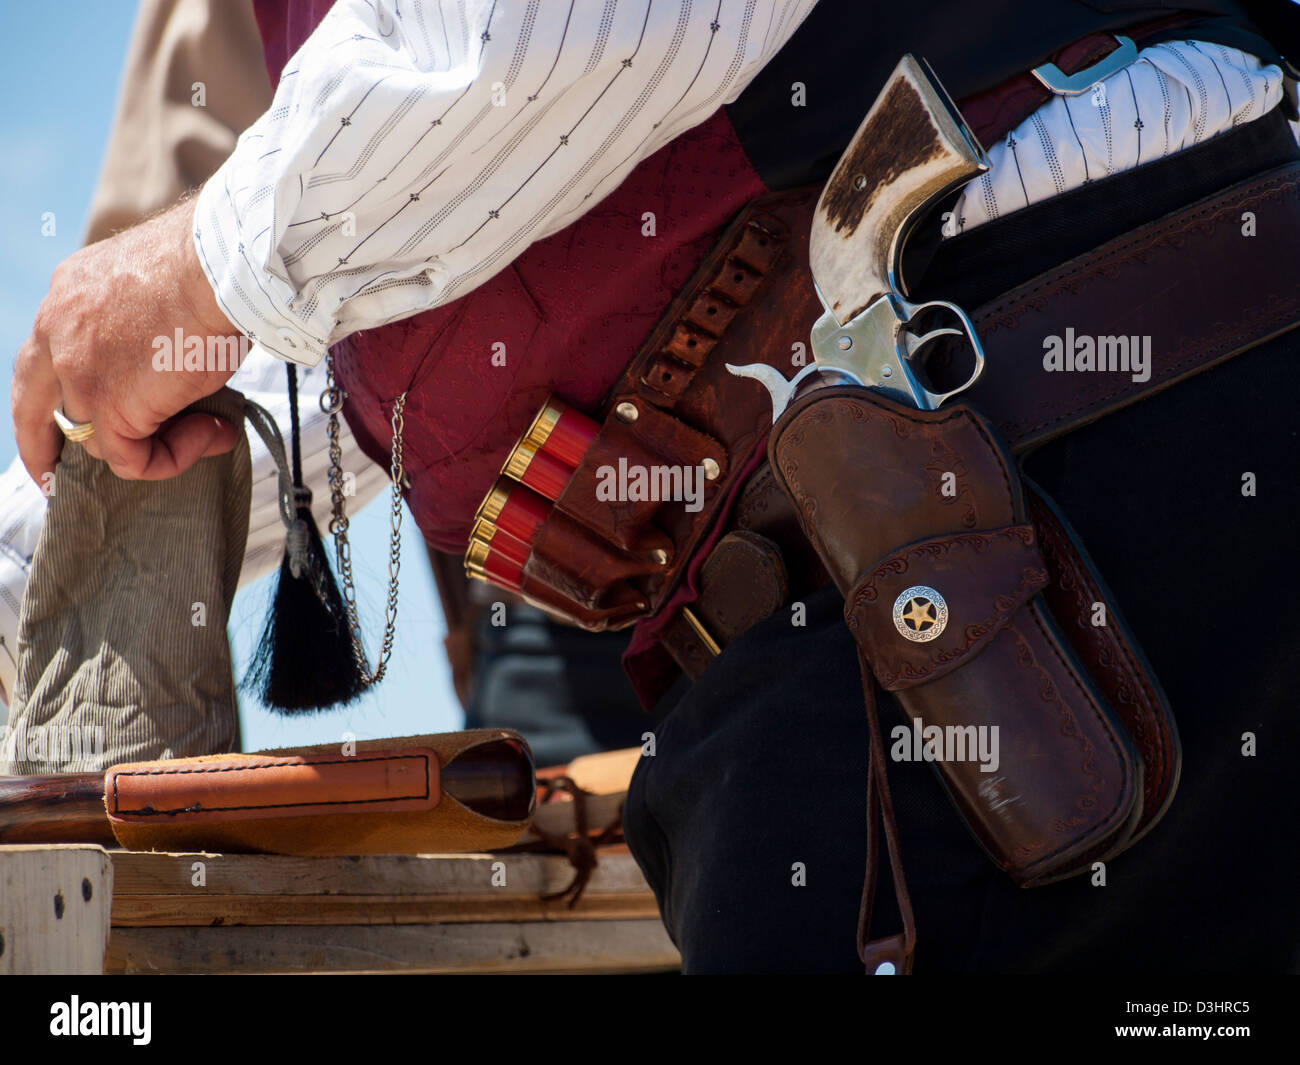 2012 jährliche Anpassung von Colorado shaketails Cowboy Action Shooting sass Club. Der schusswaffen verwendet werden, auf jene, die im 19. Jahrhundert American West besteht, d. h. Hebel Gewehr, Single Action Revolver, und Schrotflinte. Stockfoto